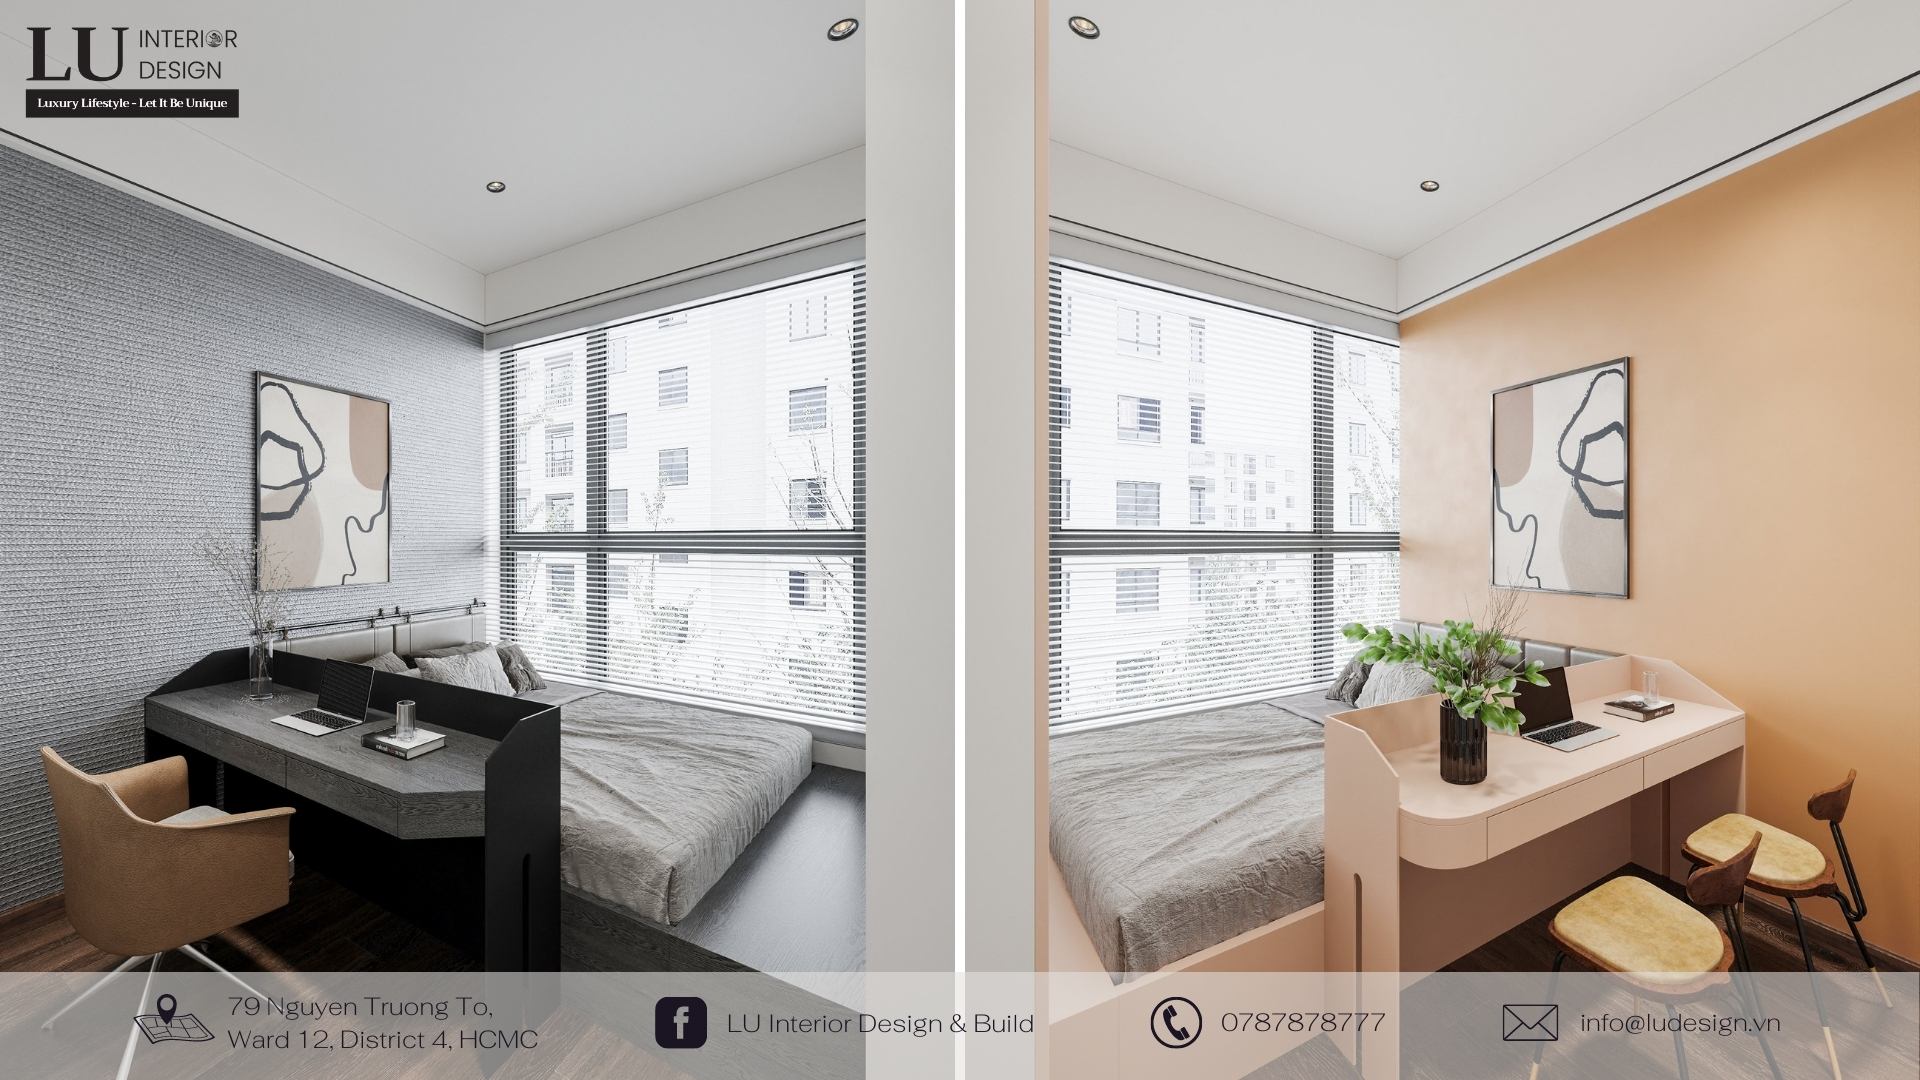 Sử dụng tranh treo tường trong thiết kế thi công nội thất căn hộ chung cư để tạo chiều sâu cho không gian phòng ngủ | Dự án căn hộ Mar Q - LU Design.